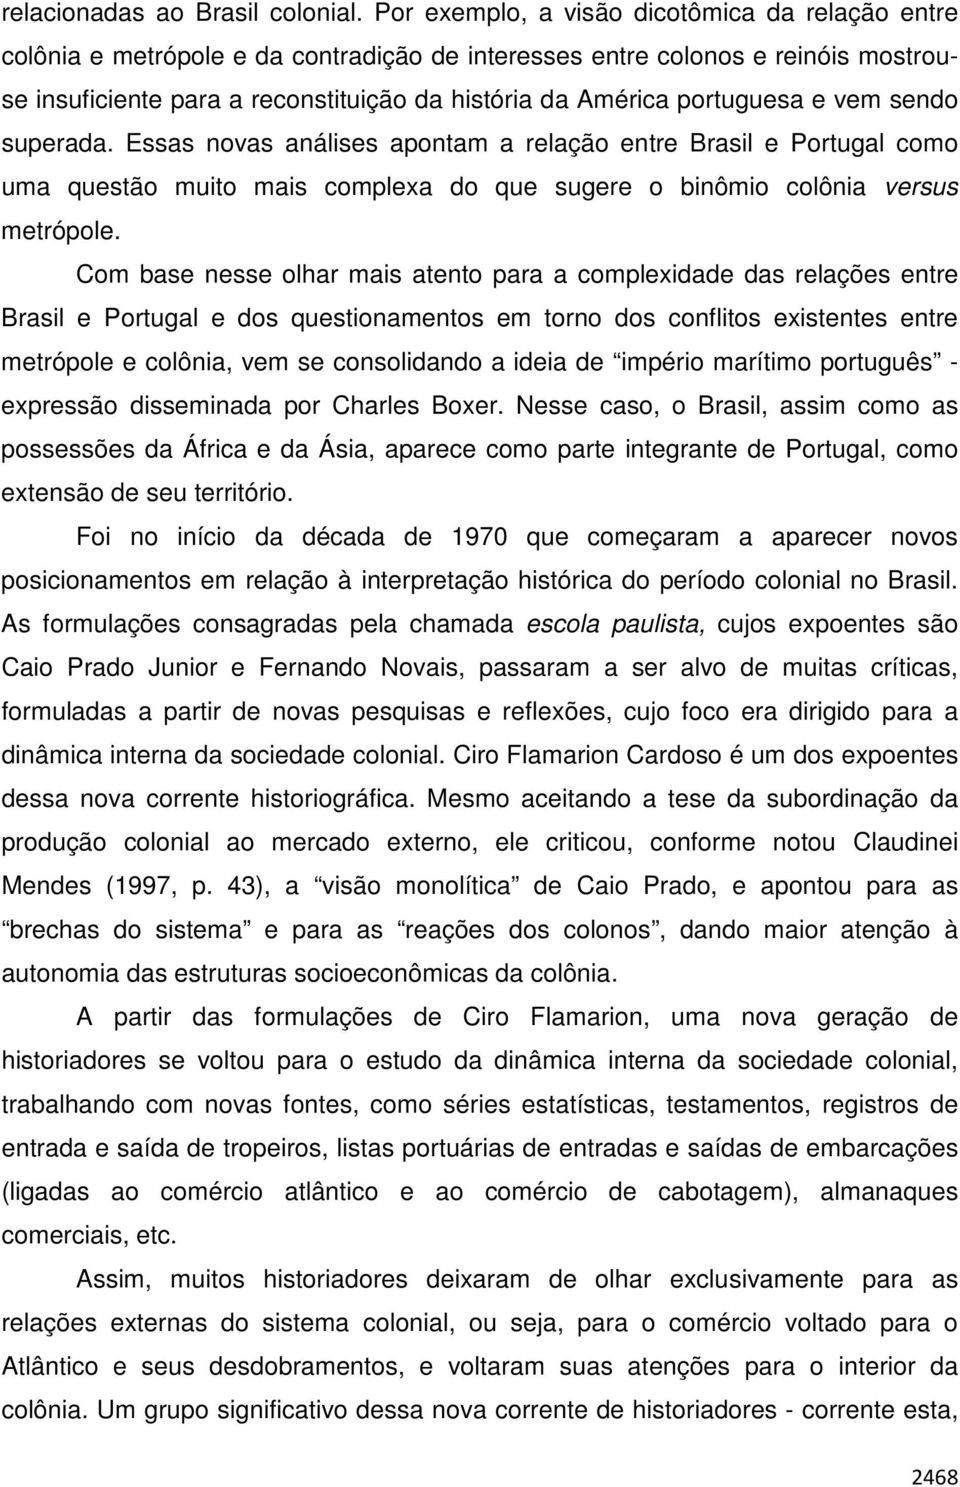 portuguesa e vem sendo superada. Essas novas análises apontam a relação entre Brasil e Portugal como uma questão muito mais complexa do que sugere o binômio colônia versus metrópole.